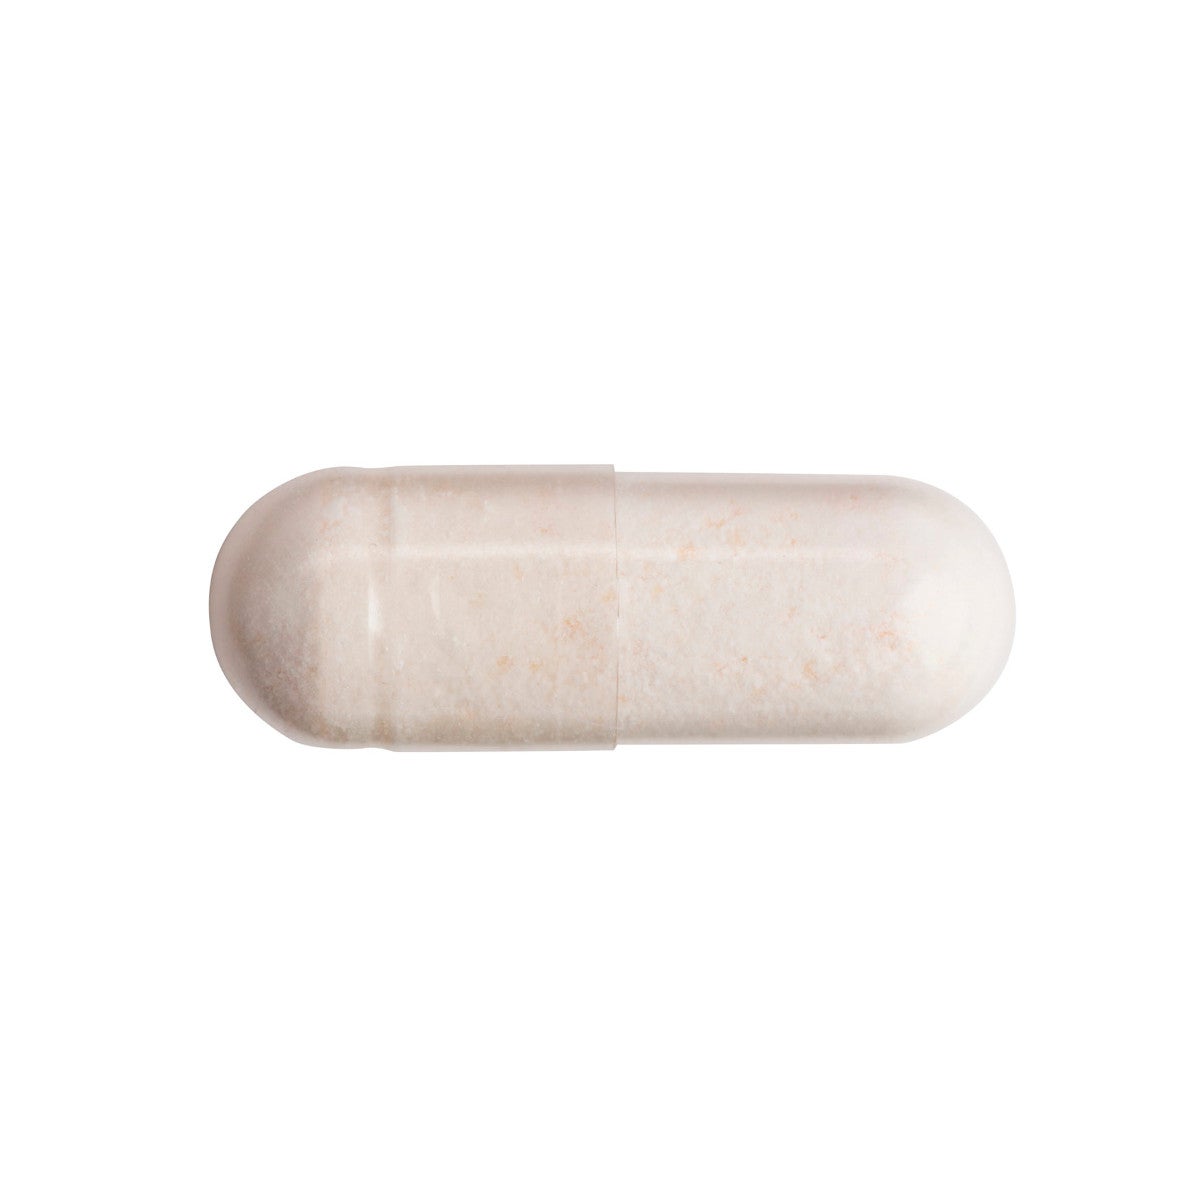 Pharmanex Pro-B pill aerial